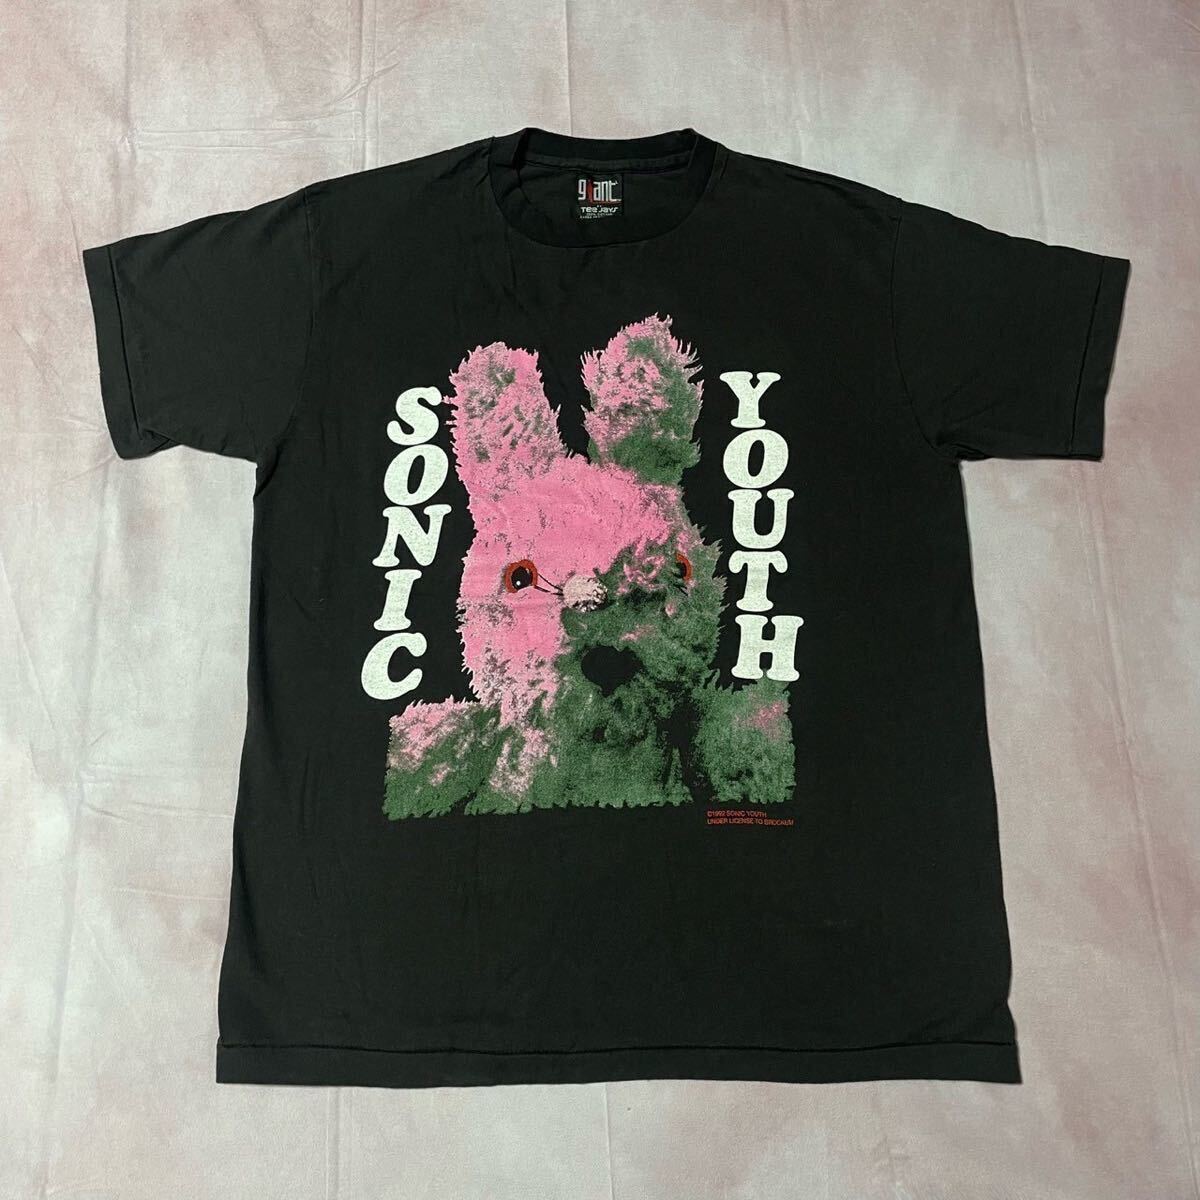 Sonic Youth ソニックユース Gracias black Tシャツ Lサイズの画像1